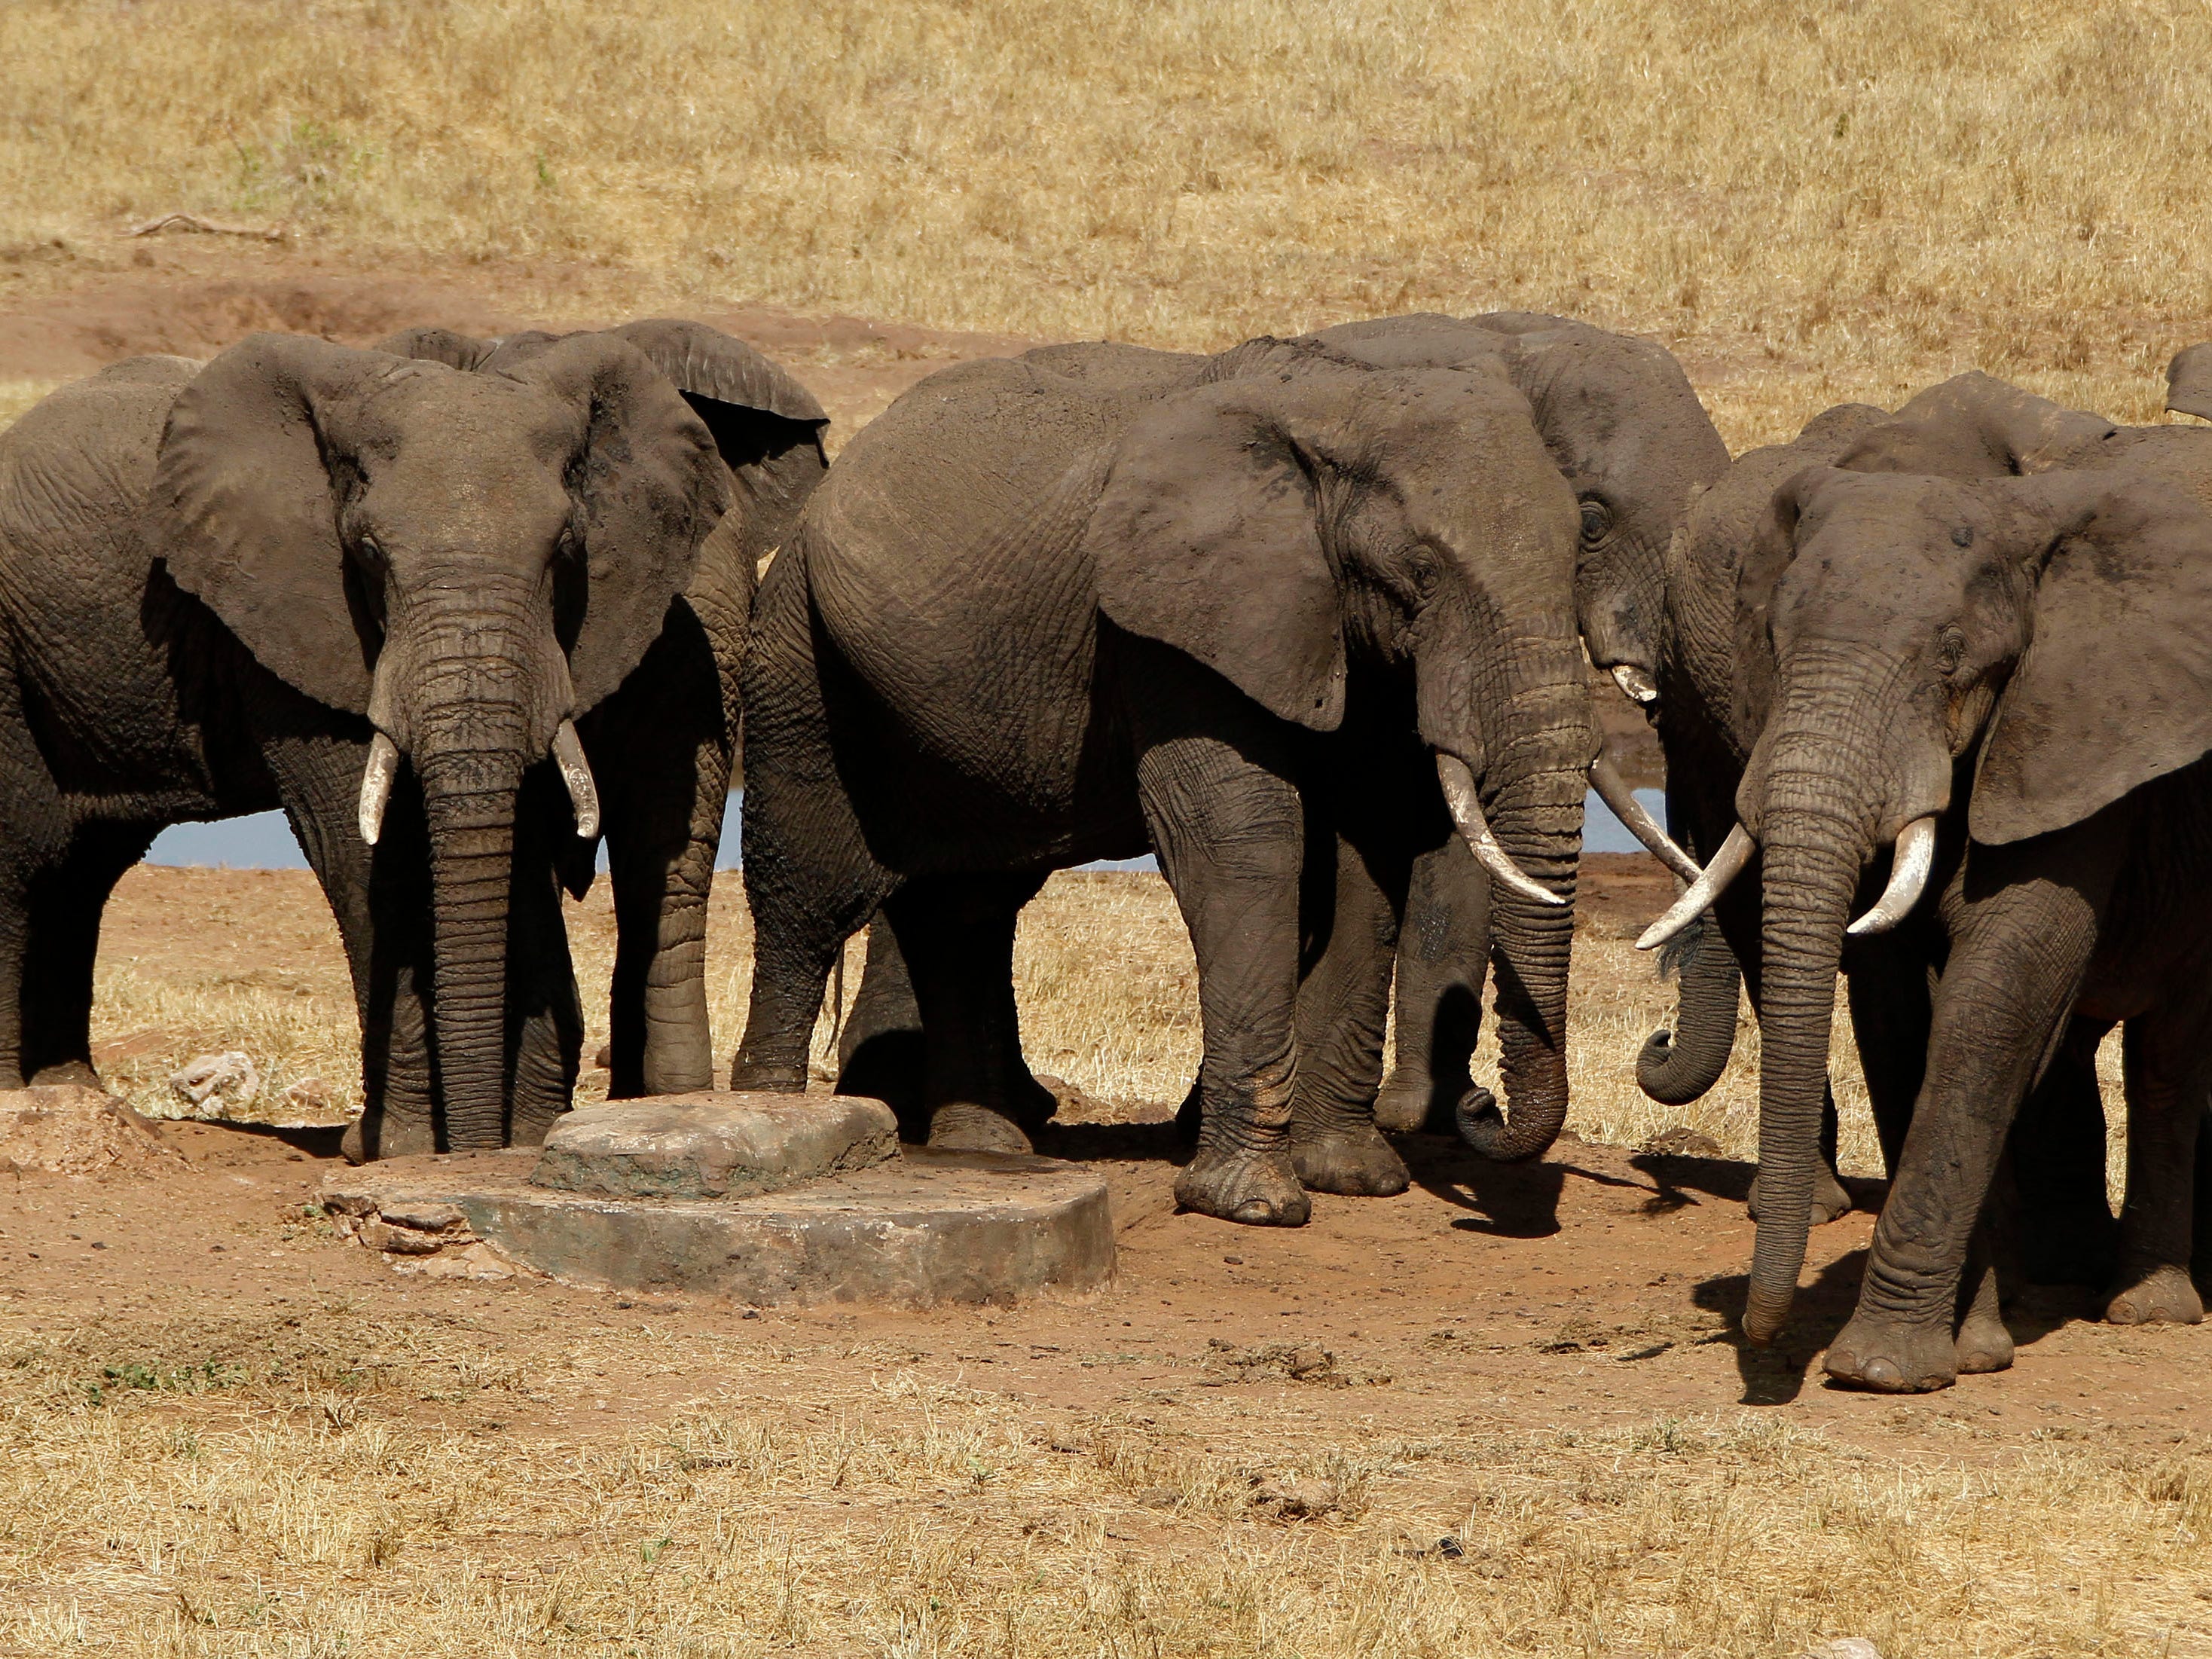 ボツワナ大統領、「2万頭のゾウを送る」とドイツを脅す…野生のゾウの保護を巡って